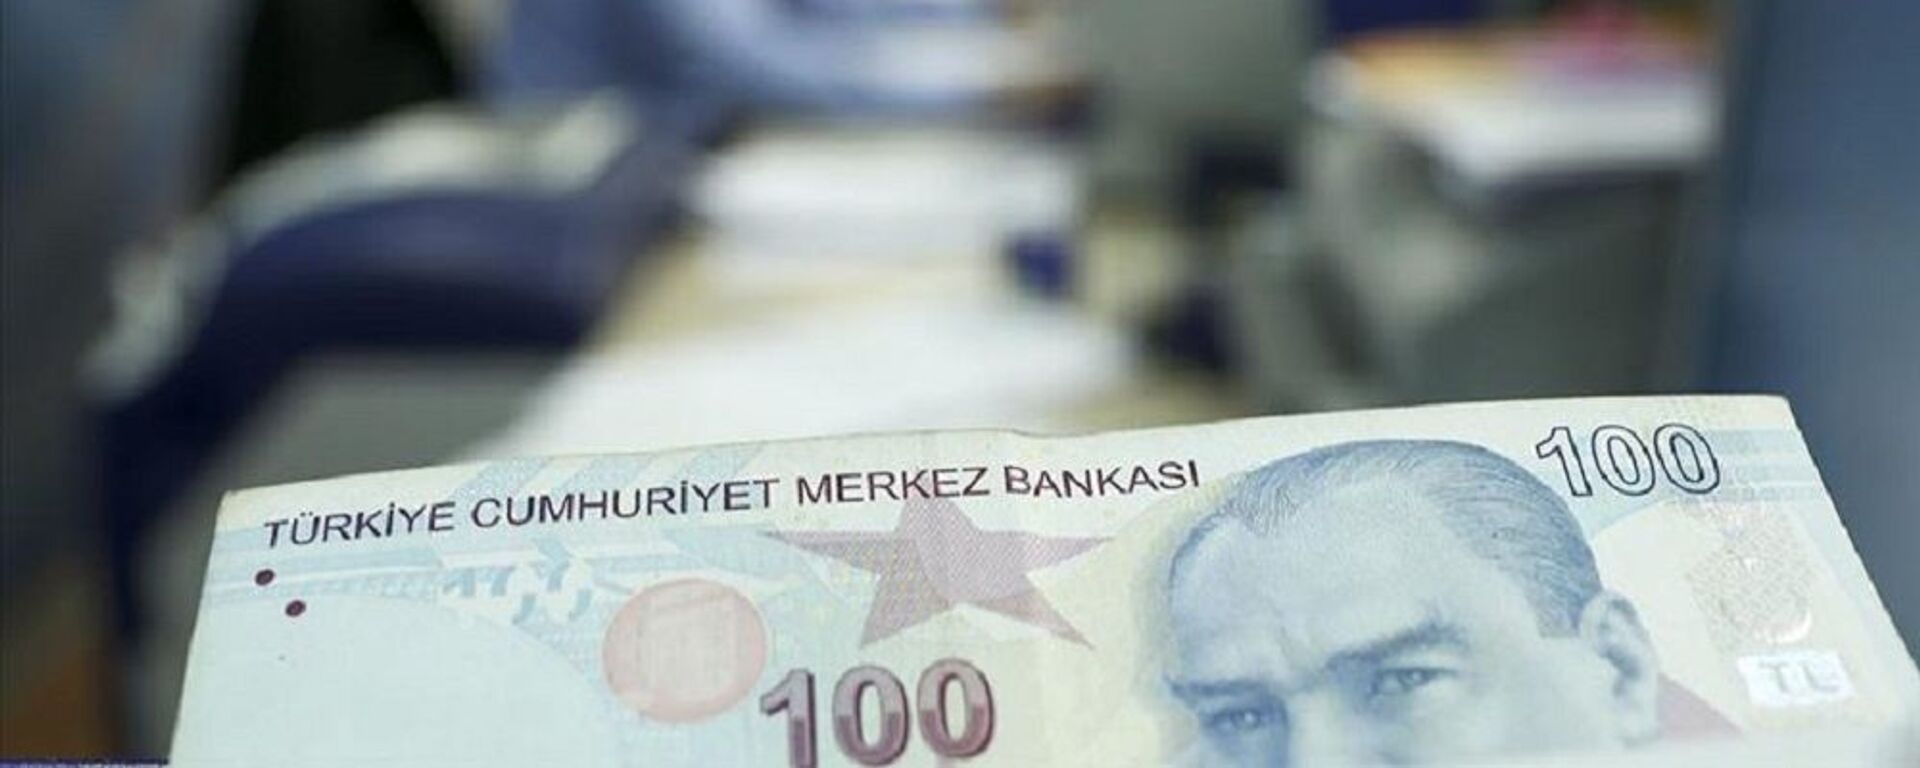 kısa çalışma ödeneği, türk lirası, banka, para - Sputnik Türkiye, 1920, 27.04.2021